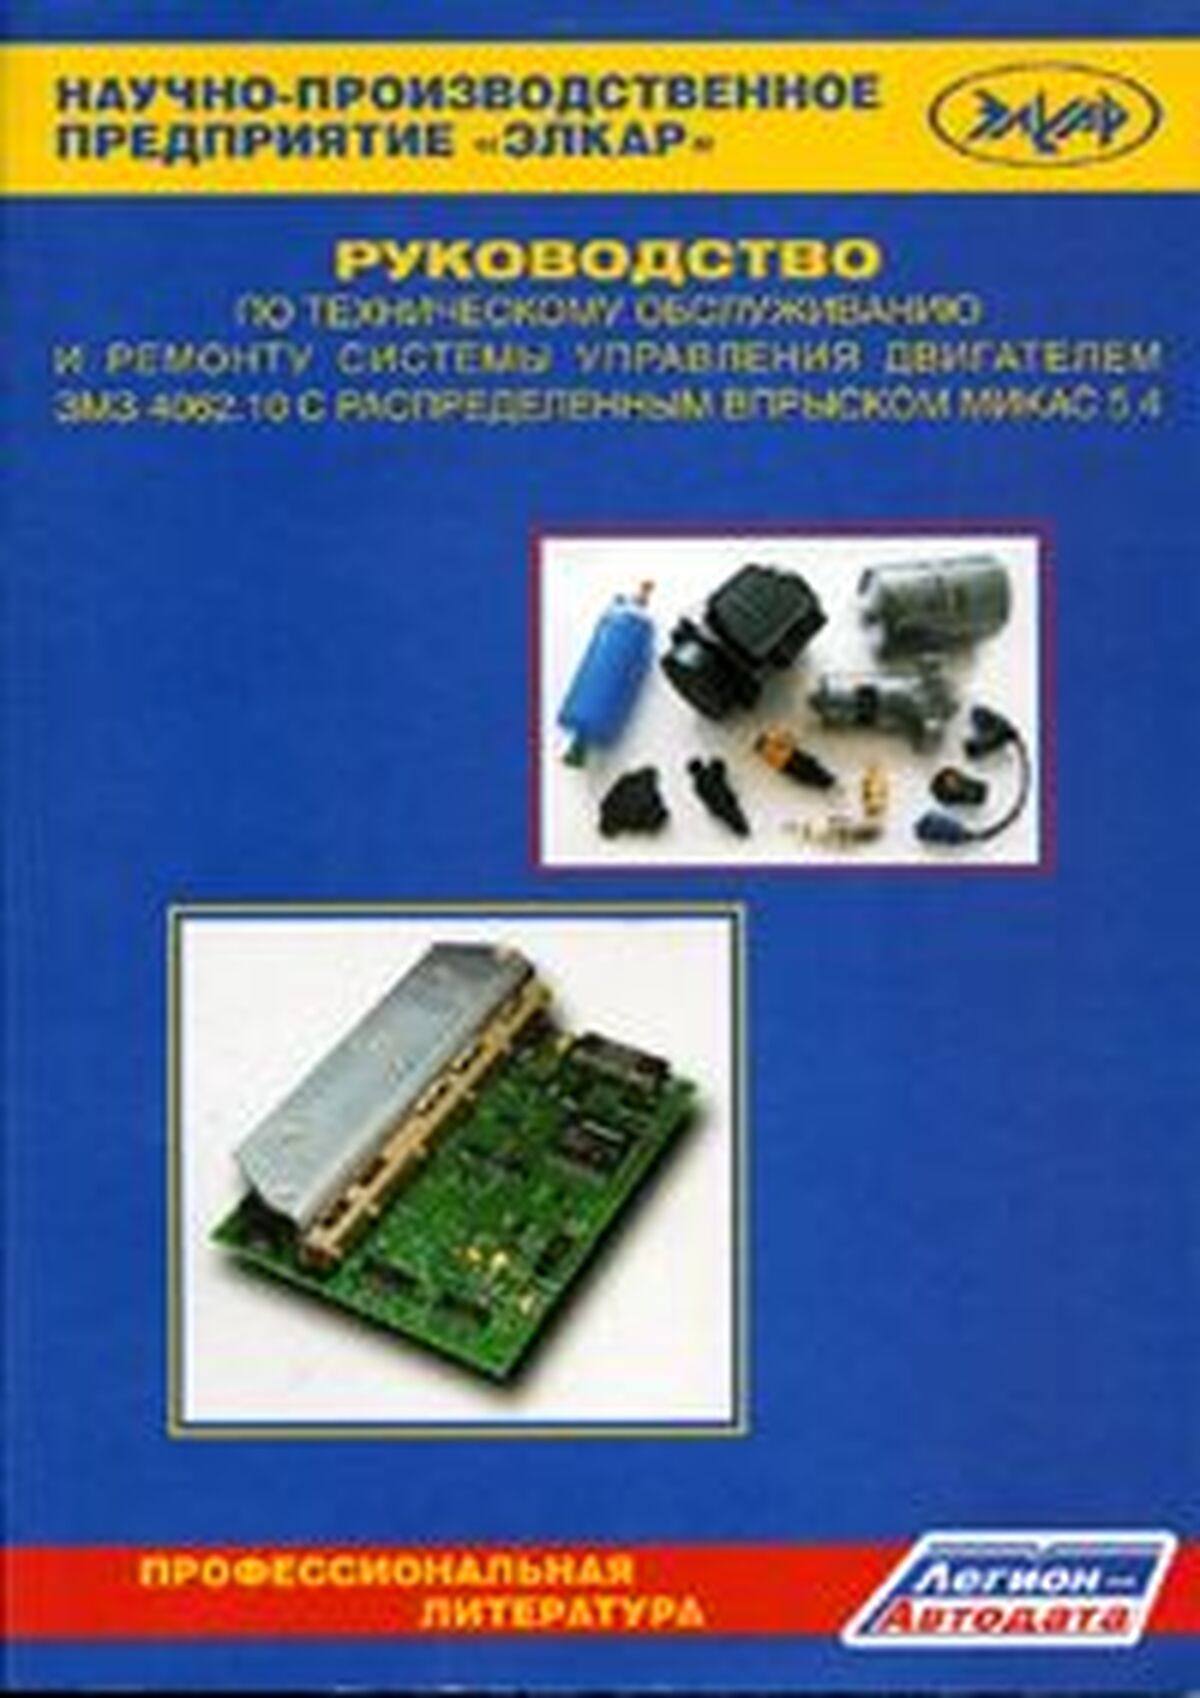 Книга: Системы управления двигателем ЗМЗ 4062.10 с распределенным впрыском МИКАС 5,4 | Легион-Aвтодата